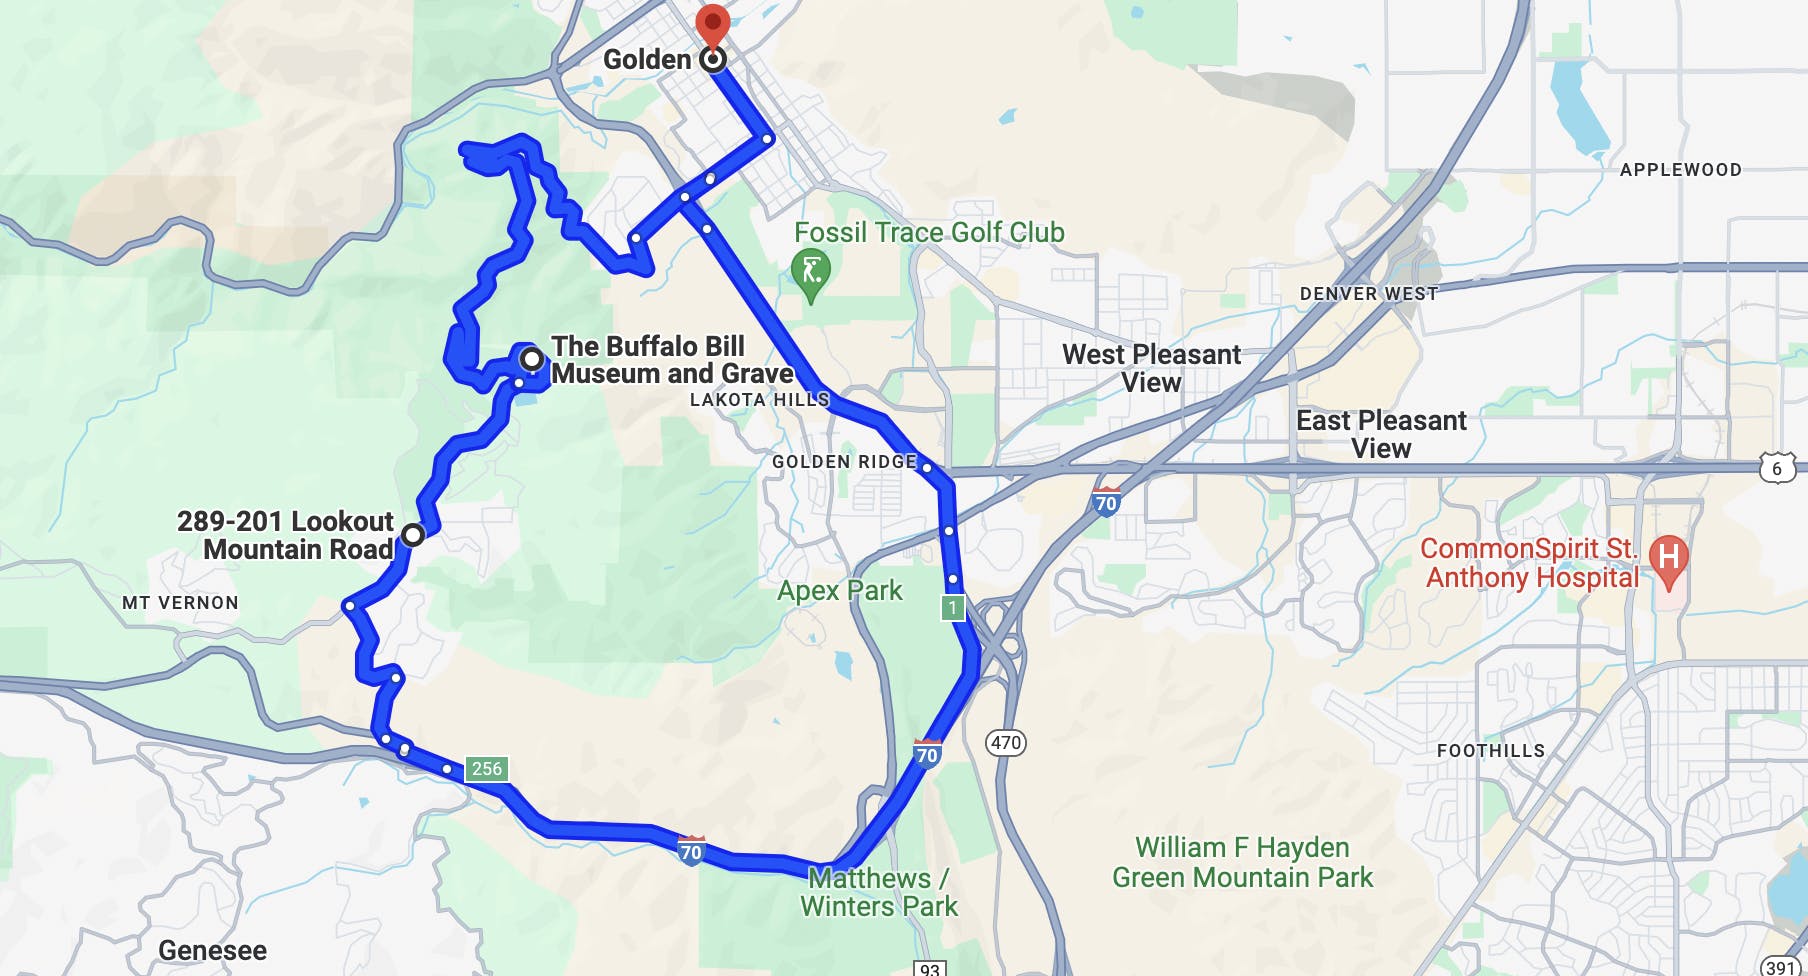 map of denver, colorado motorcycle route - lariat loop